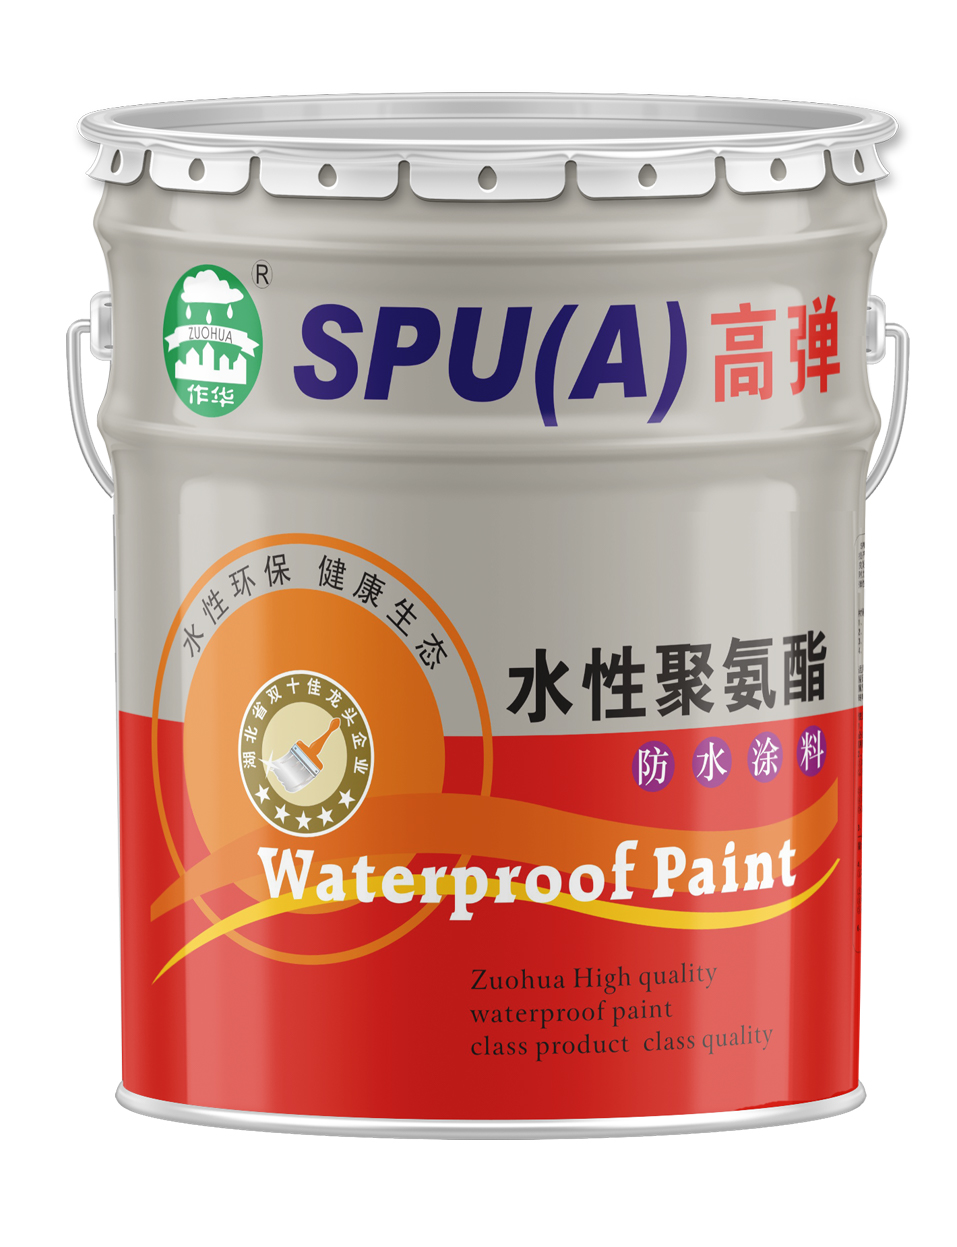 SPUA水性涂料又称水皮优水池屋面彩钢瓦**涂料武汉厂家供应